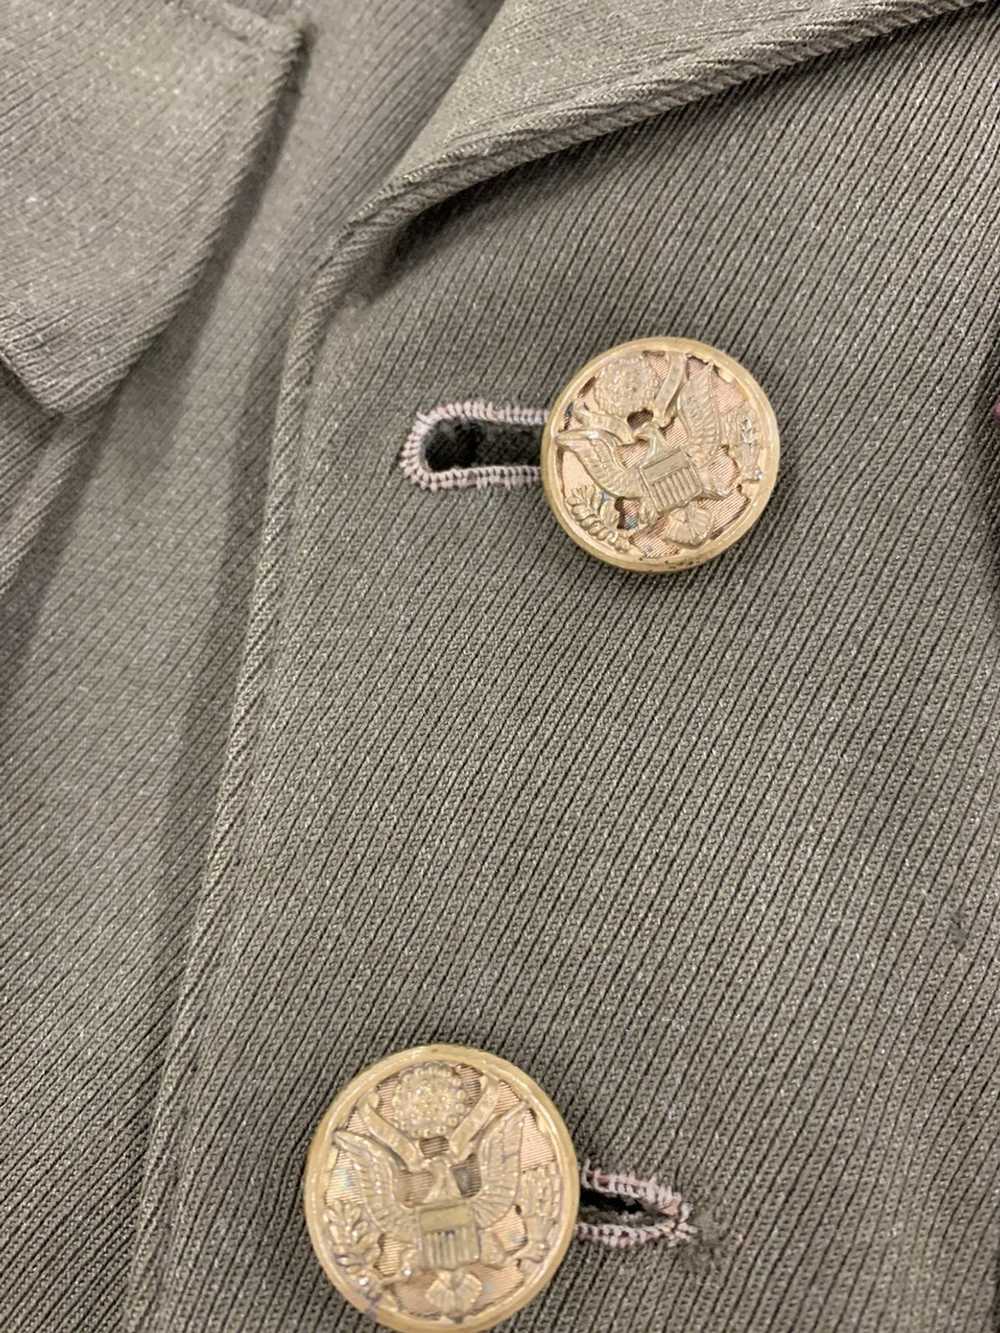 Vintage Vintage WW2 Belted Officers Uniform Jacket - image 3